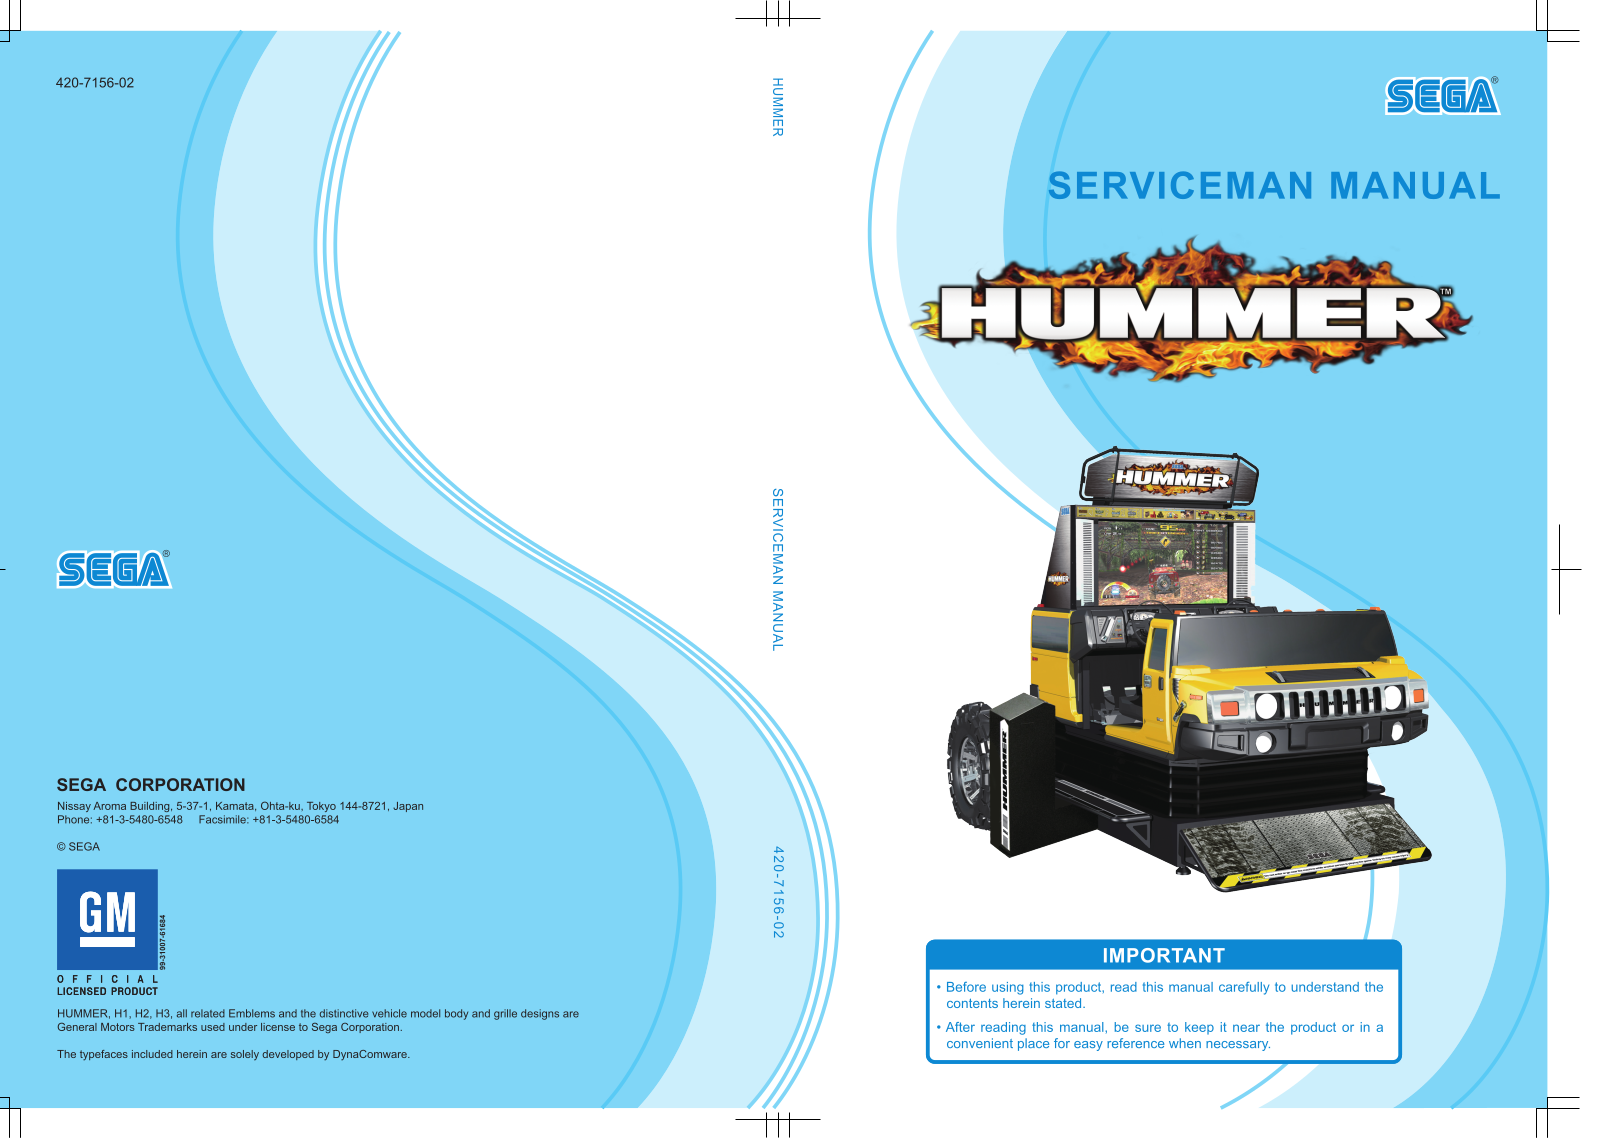 Sega HUMMER Manual